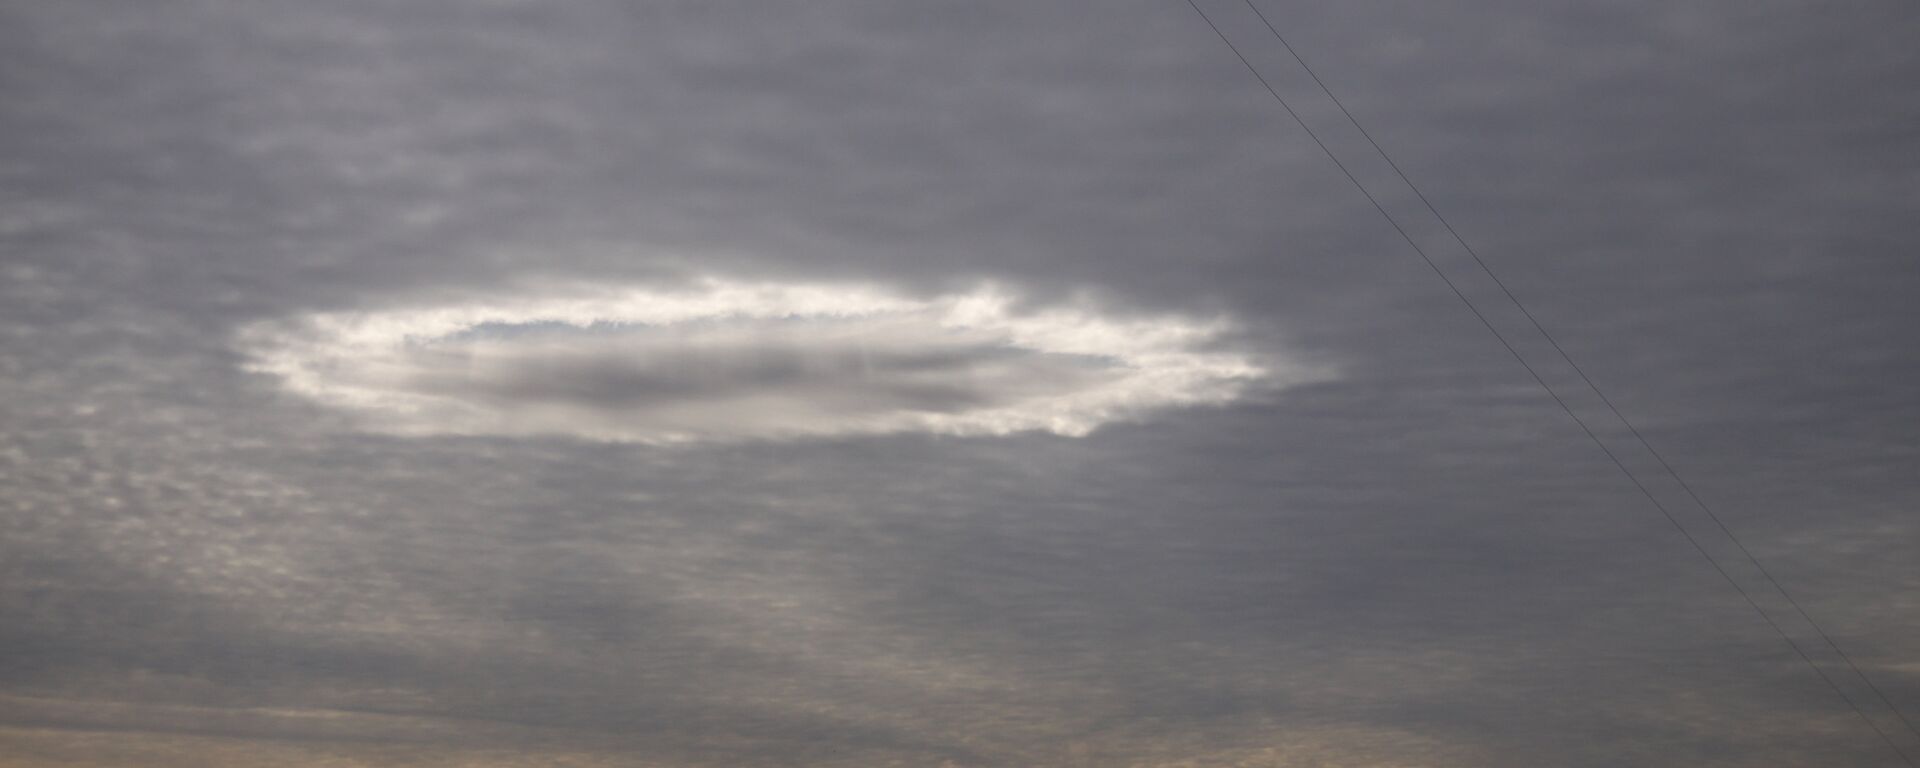 Странное светящееся облако необычной формы над городов, архивное фото  - Sputnik Казахстан, 1920, 14.08.2020